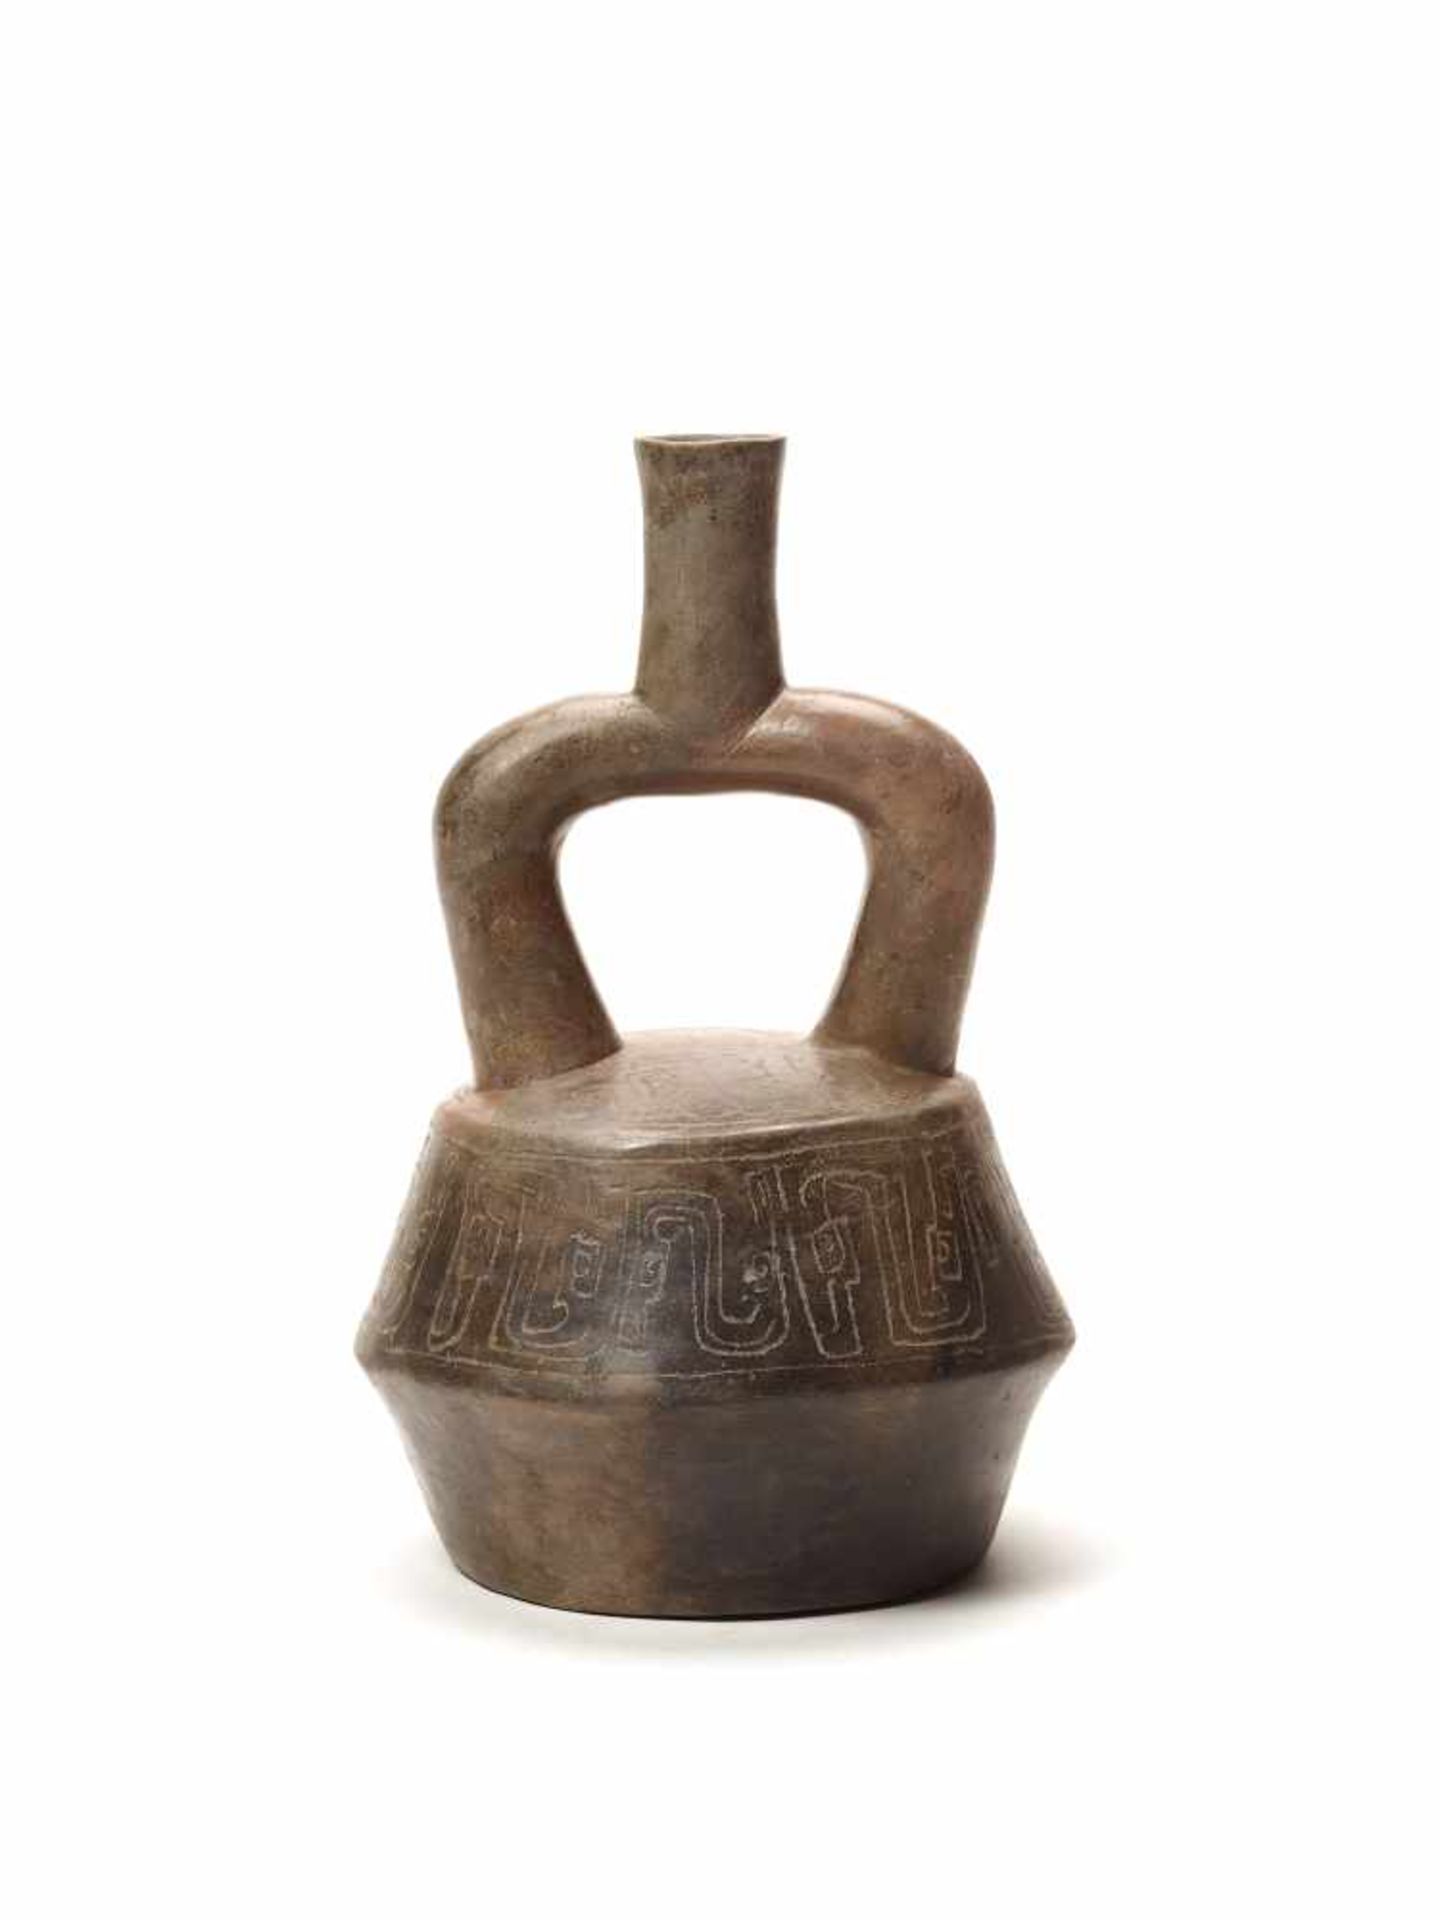 ENGRAVED STIRRUP VESSEL - CHAVIN CULTURE, PERU, C. 500 BCBlack fired clayChavin culture, Peru, c.